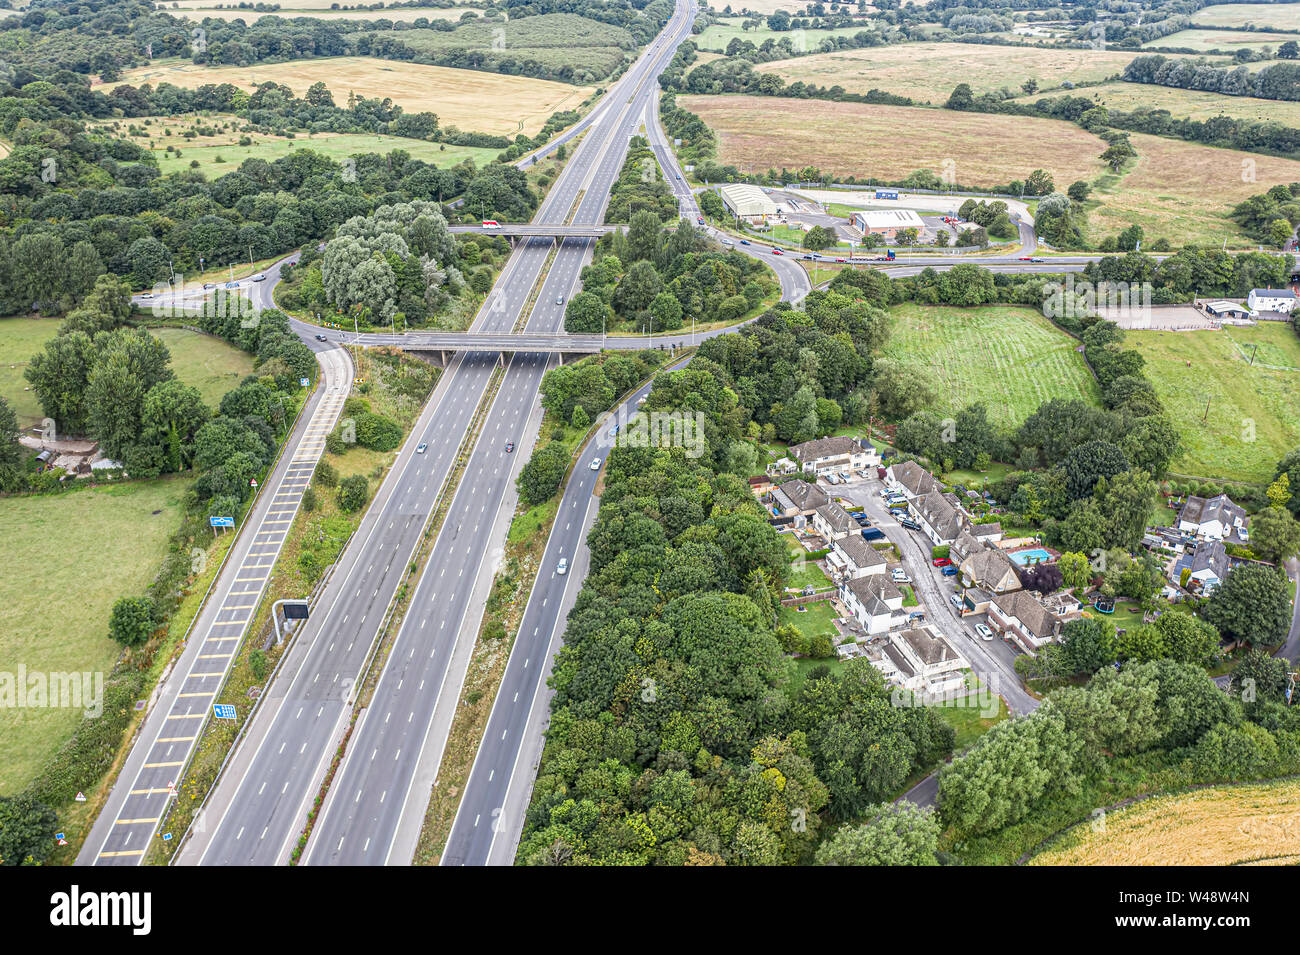 SWINDON REGNO UNITO - Luglio 21, 2019: vista aerea dell'esistente M4 Juntion 15 vicino a Swindon prima di miglioramento di lavoro inizia entro la fine di quest'anno Foto Stock